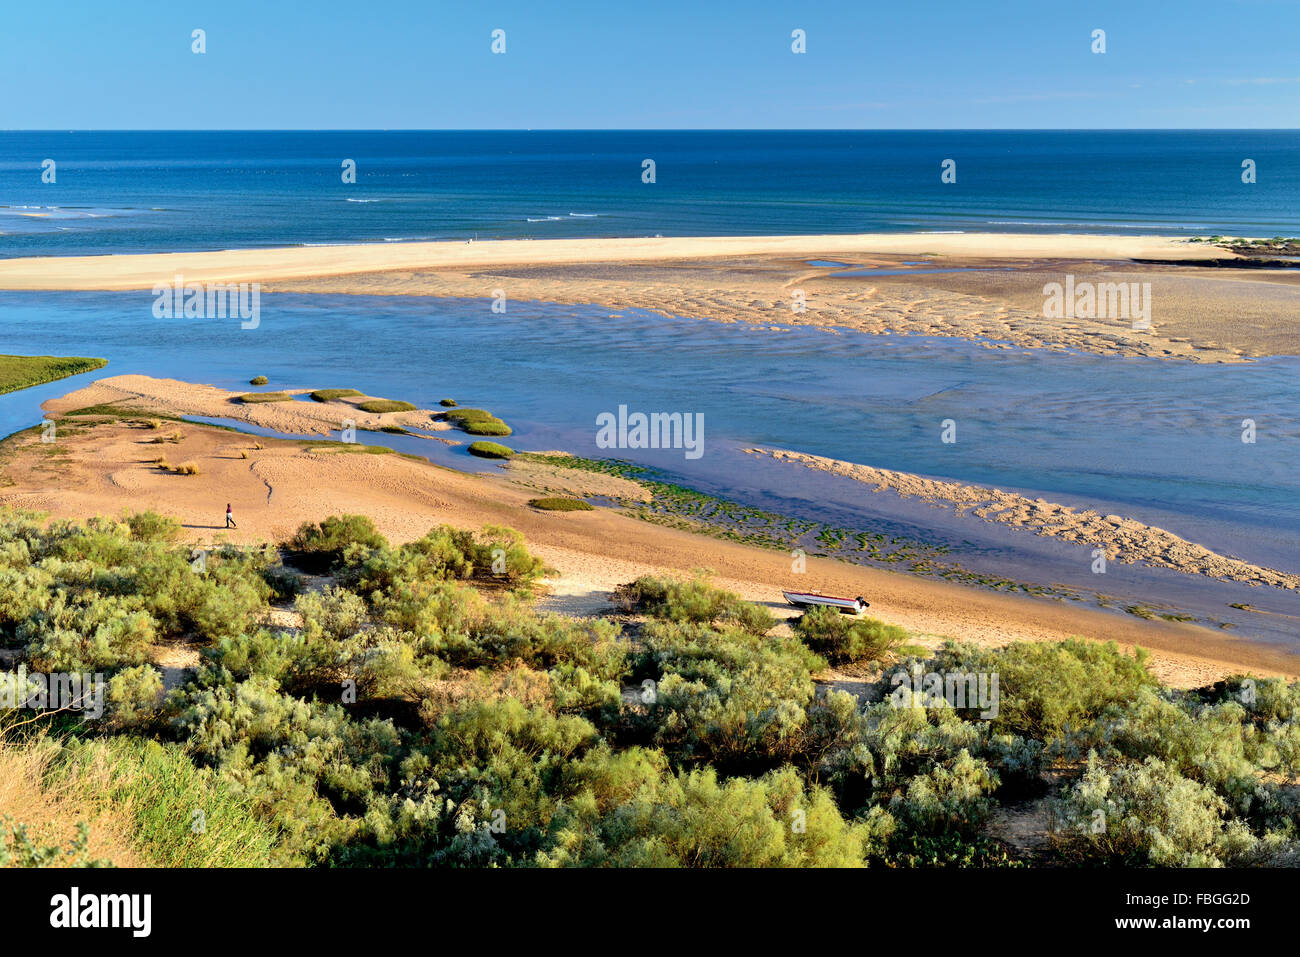 Portugal, Algarve: Vista de bancos de arena y pequeñas islas del Parque Natural Ria Formosa Foto de stock